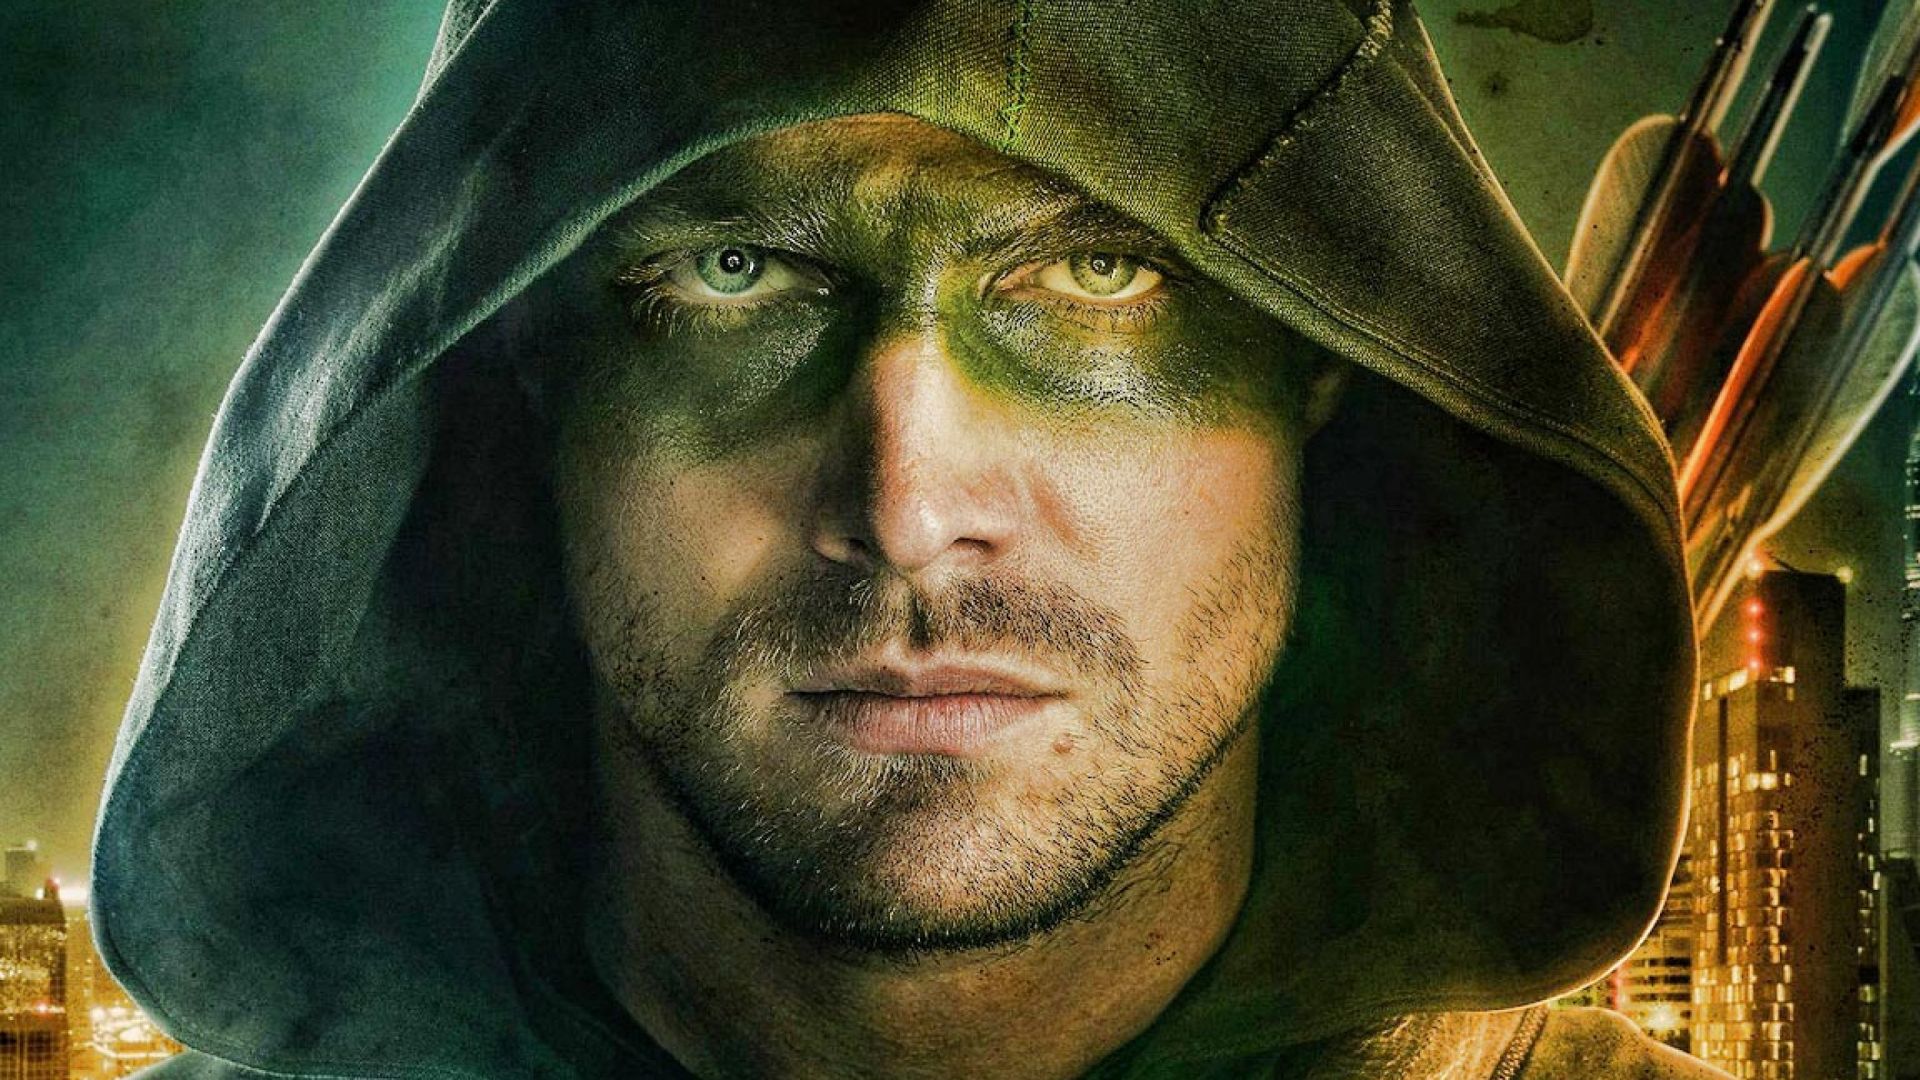 Wallpaper Stephen Amell as Green arrow in Arrow season 5